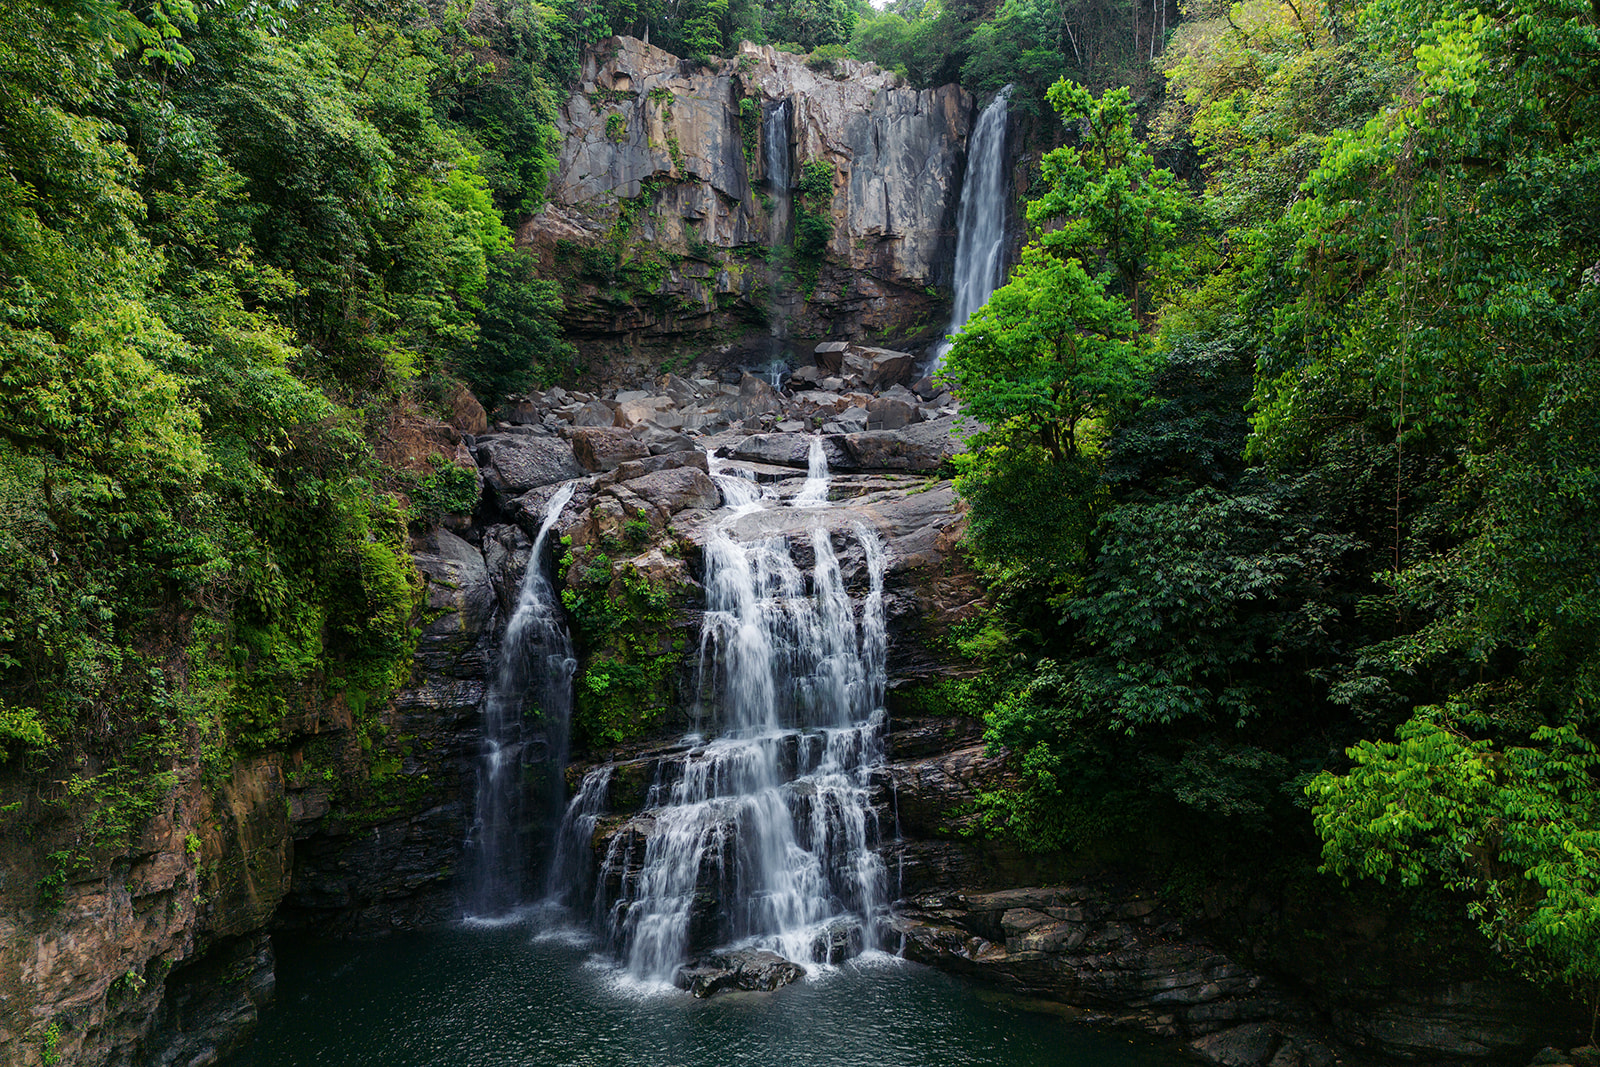 Nauyaca waterfall from the air.